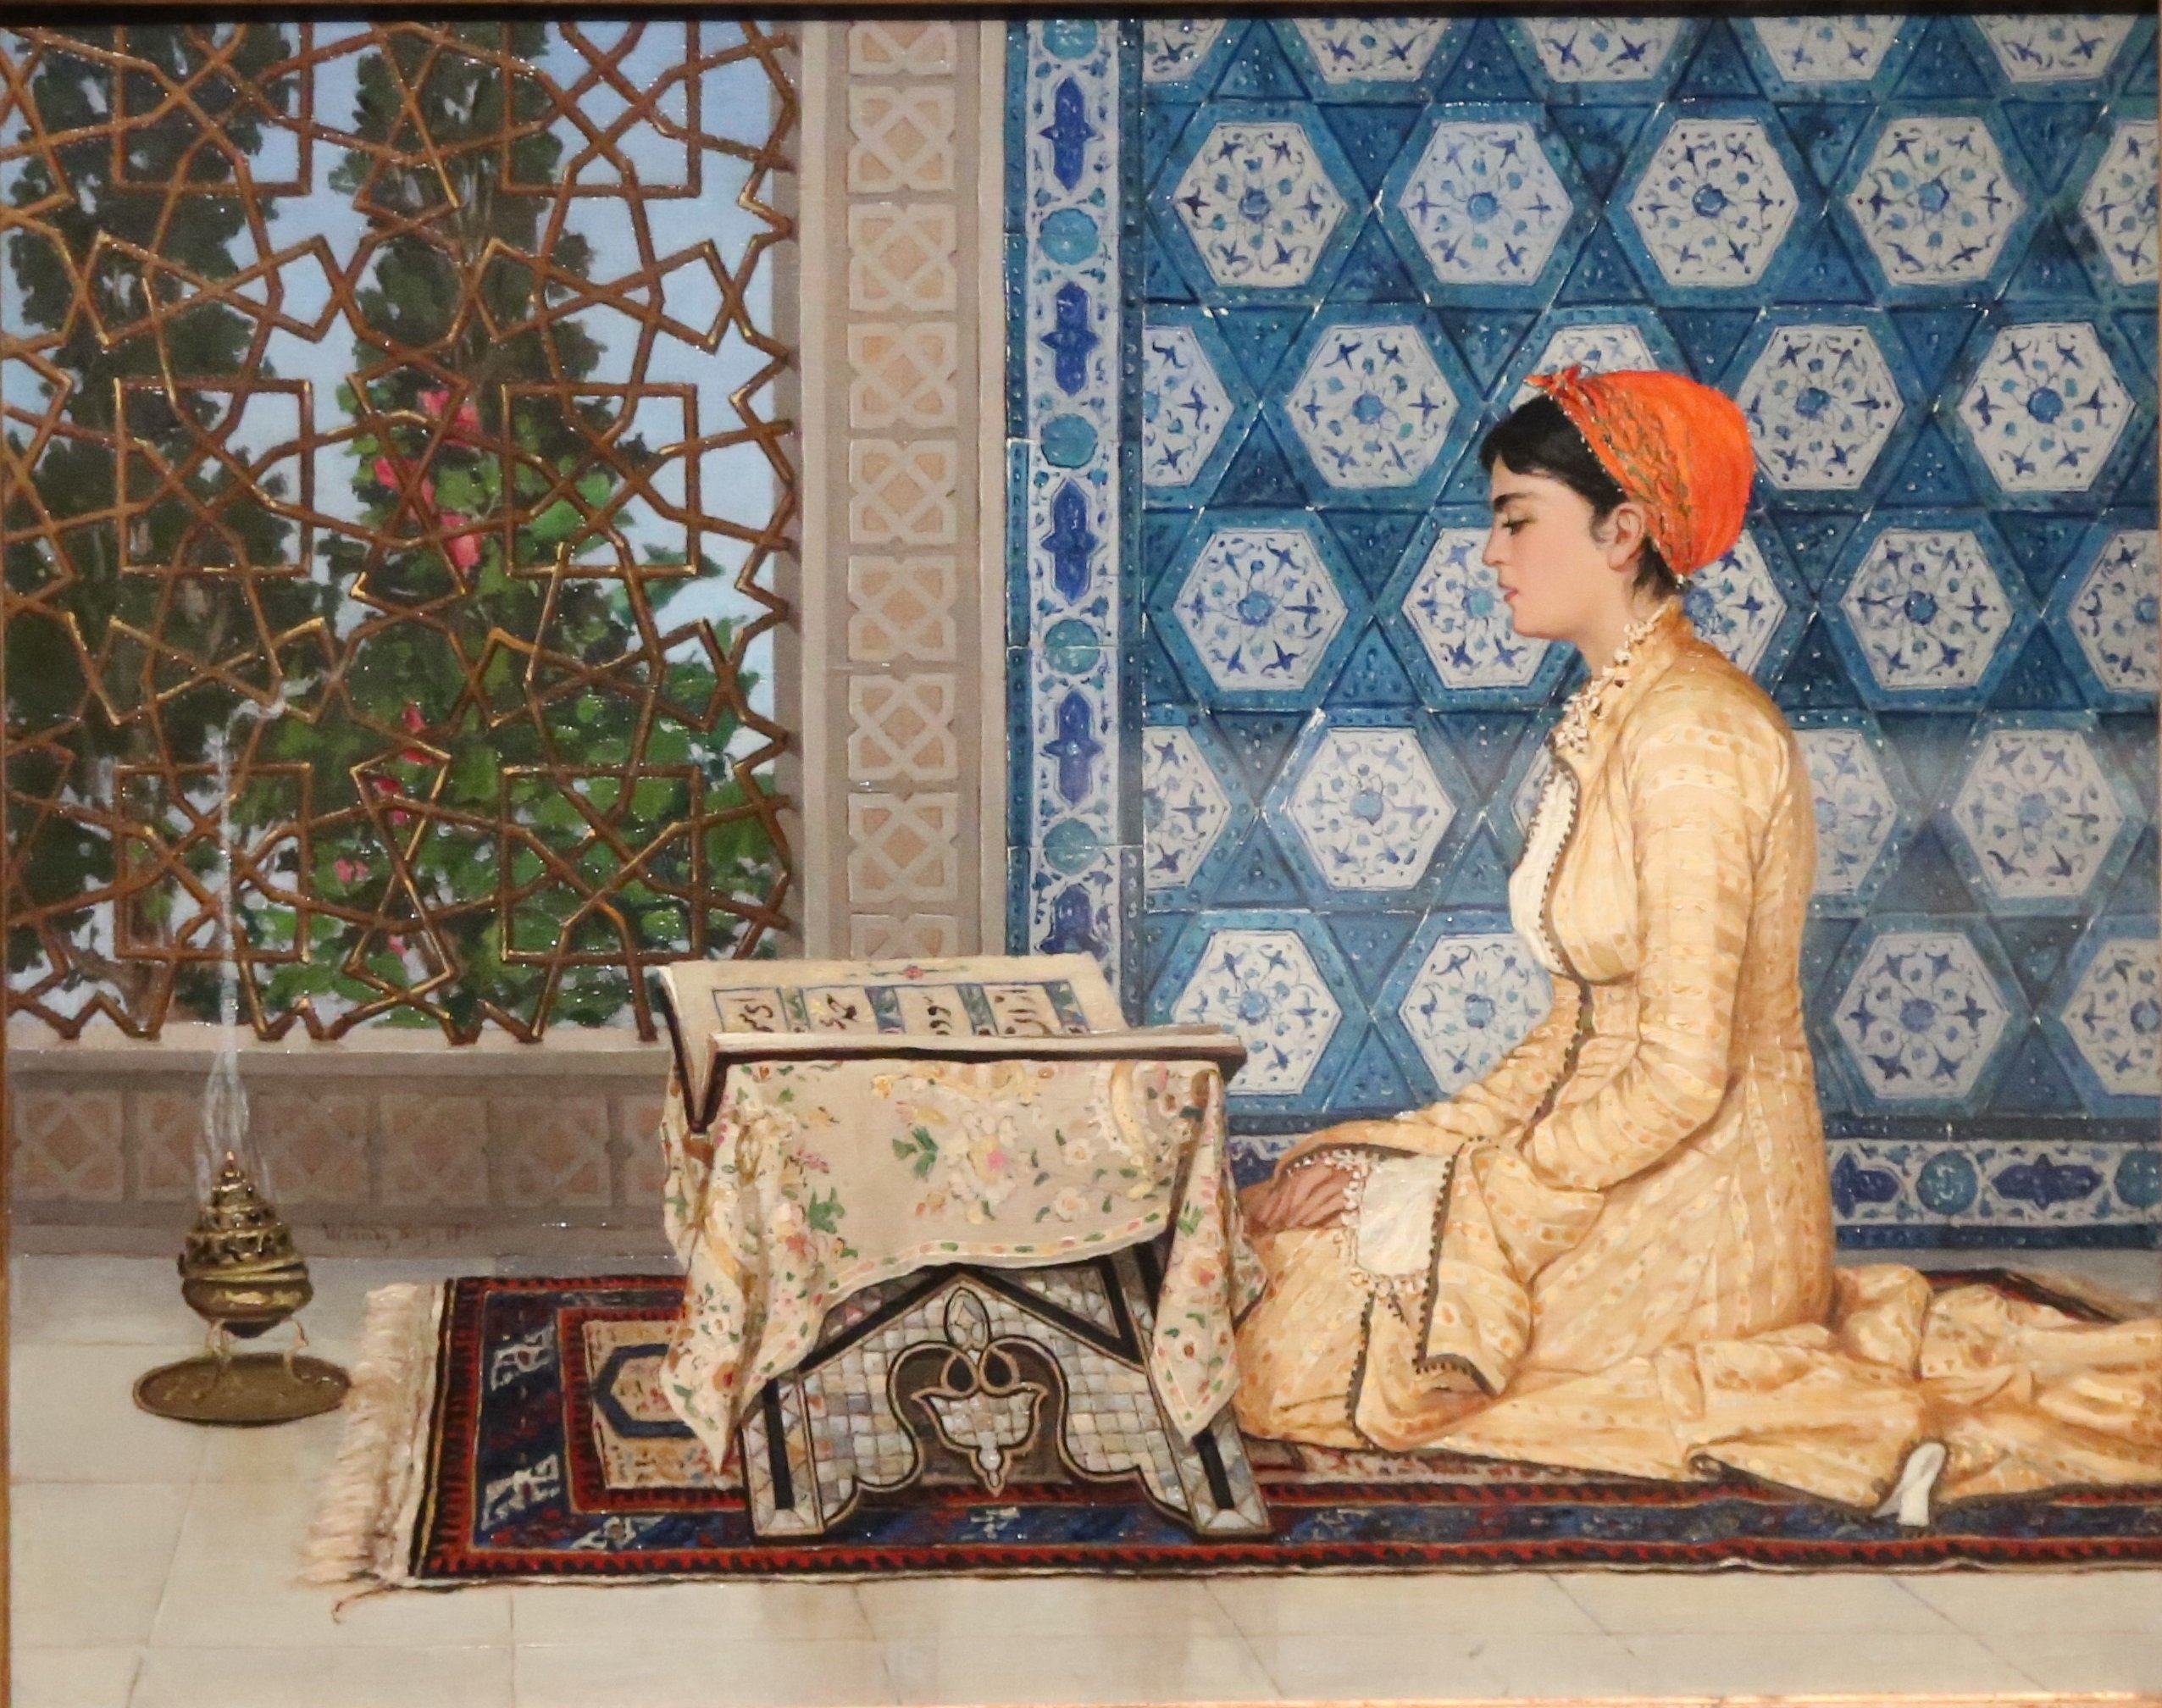 لوحة الفنان التركي عثمان حمدي بك "قارئة القرآن"